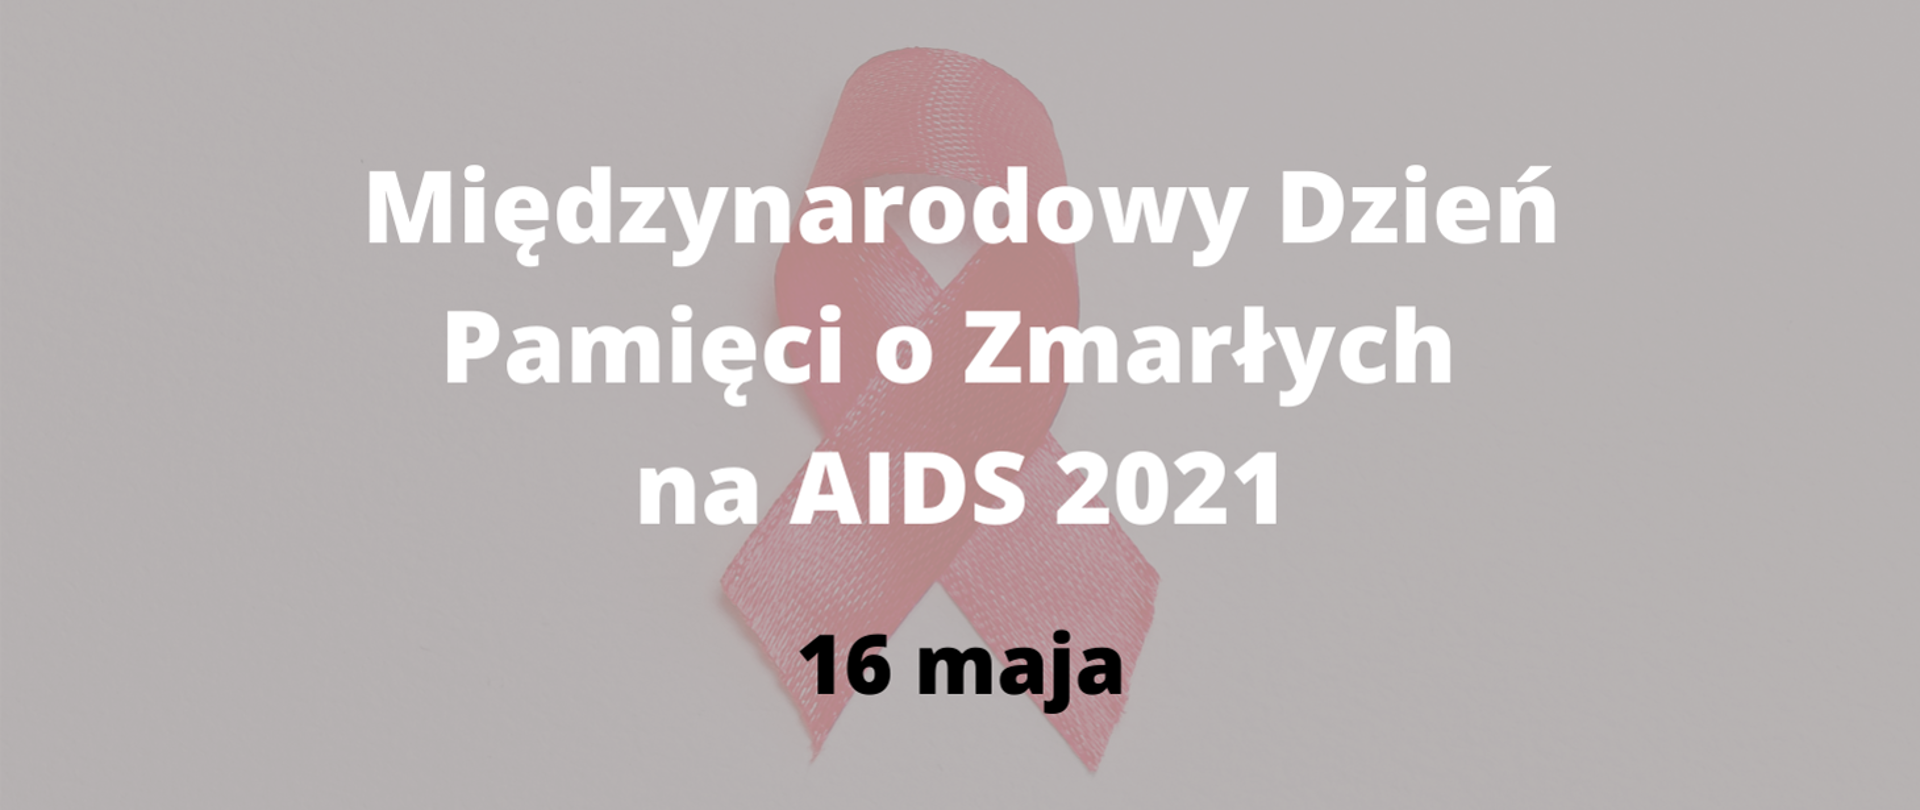 szara plansza z białym napisem i wstążką o treści "Międzynarodowy dzień pamięci o zmarłych na aids 2021"